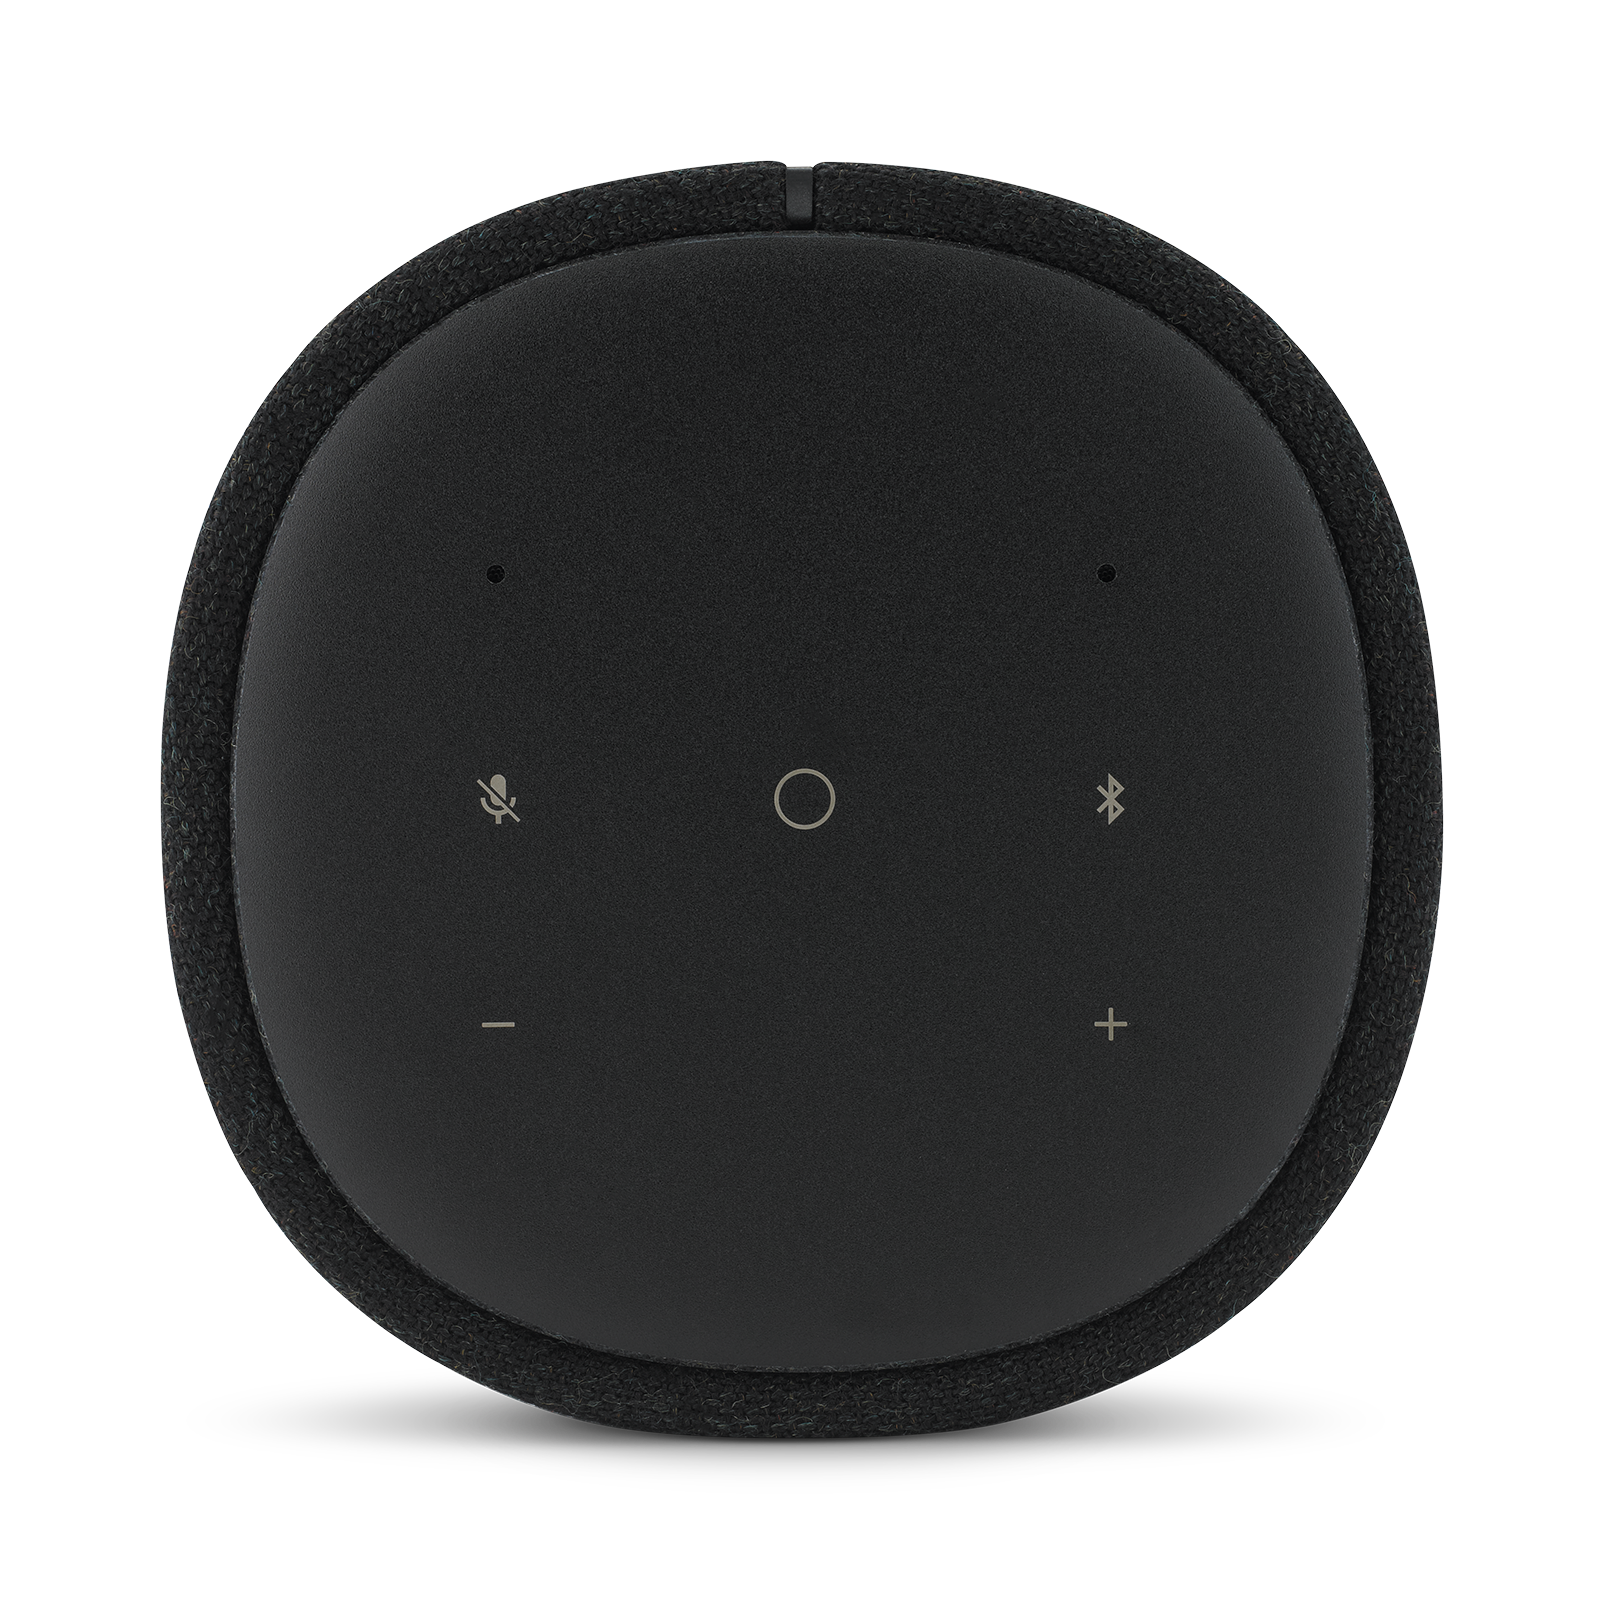 Harman Kardon Citation One MKIII - Black - All-in-one smart speaker with room-filling sound - Detailshot 3